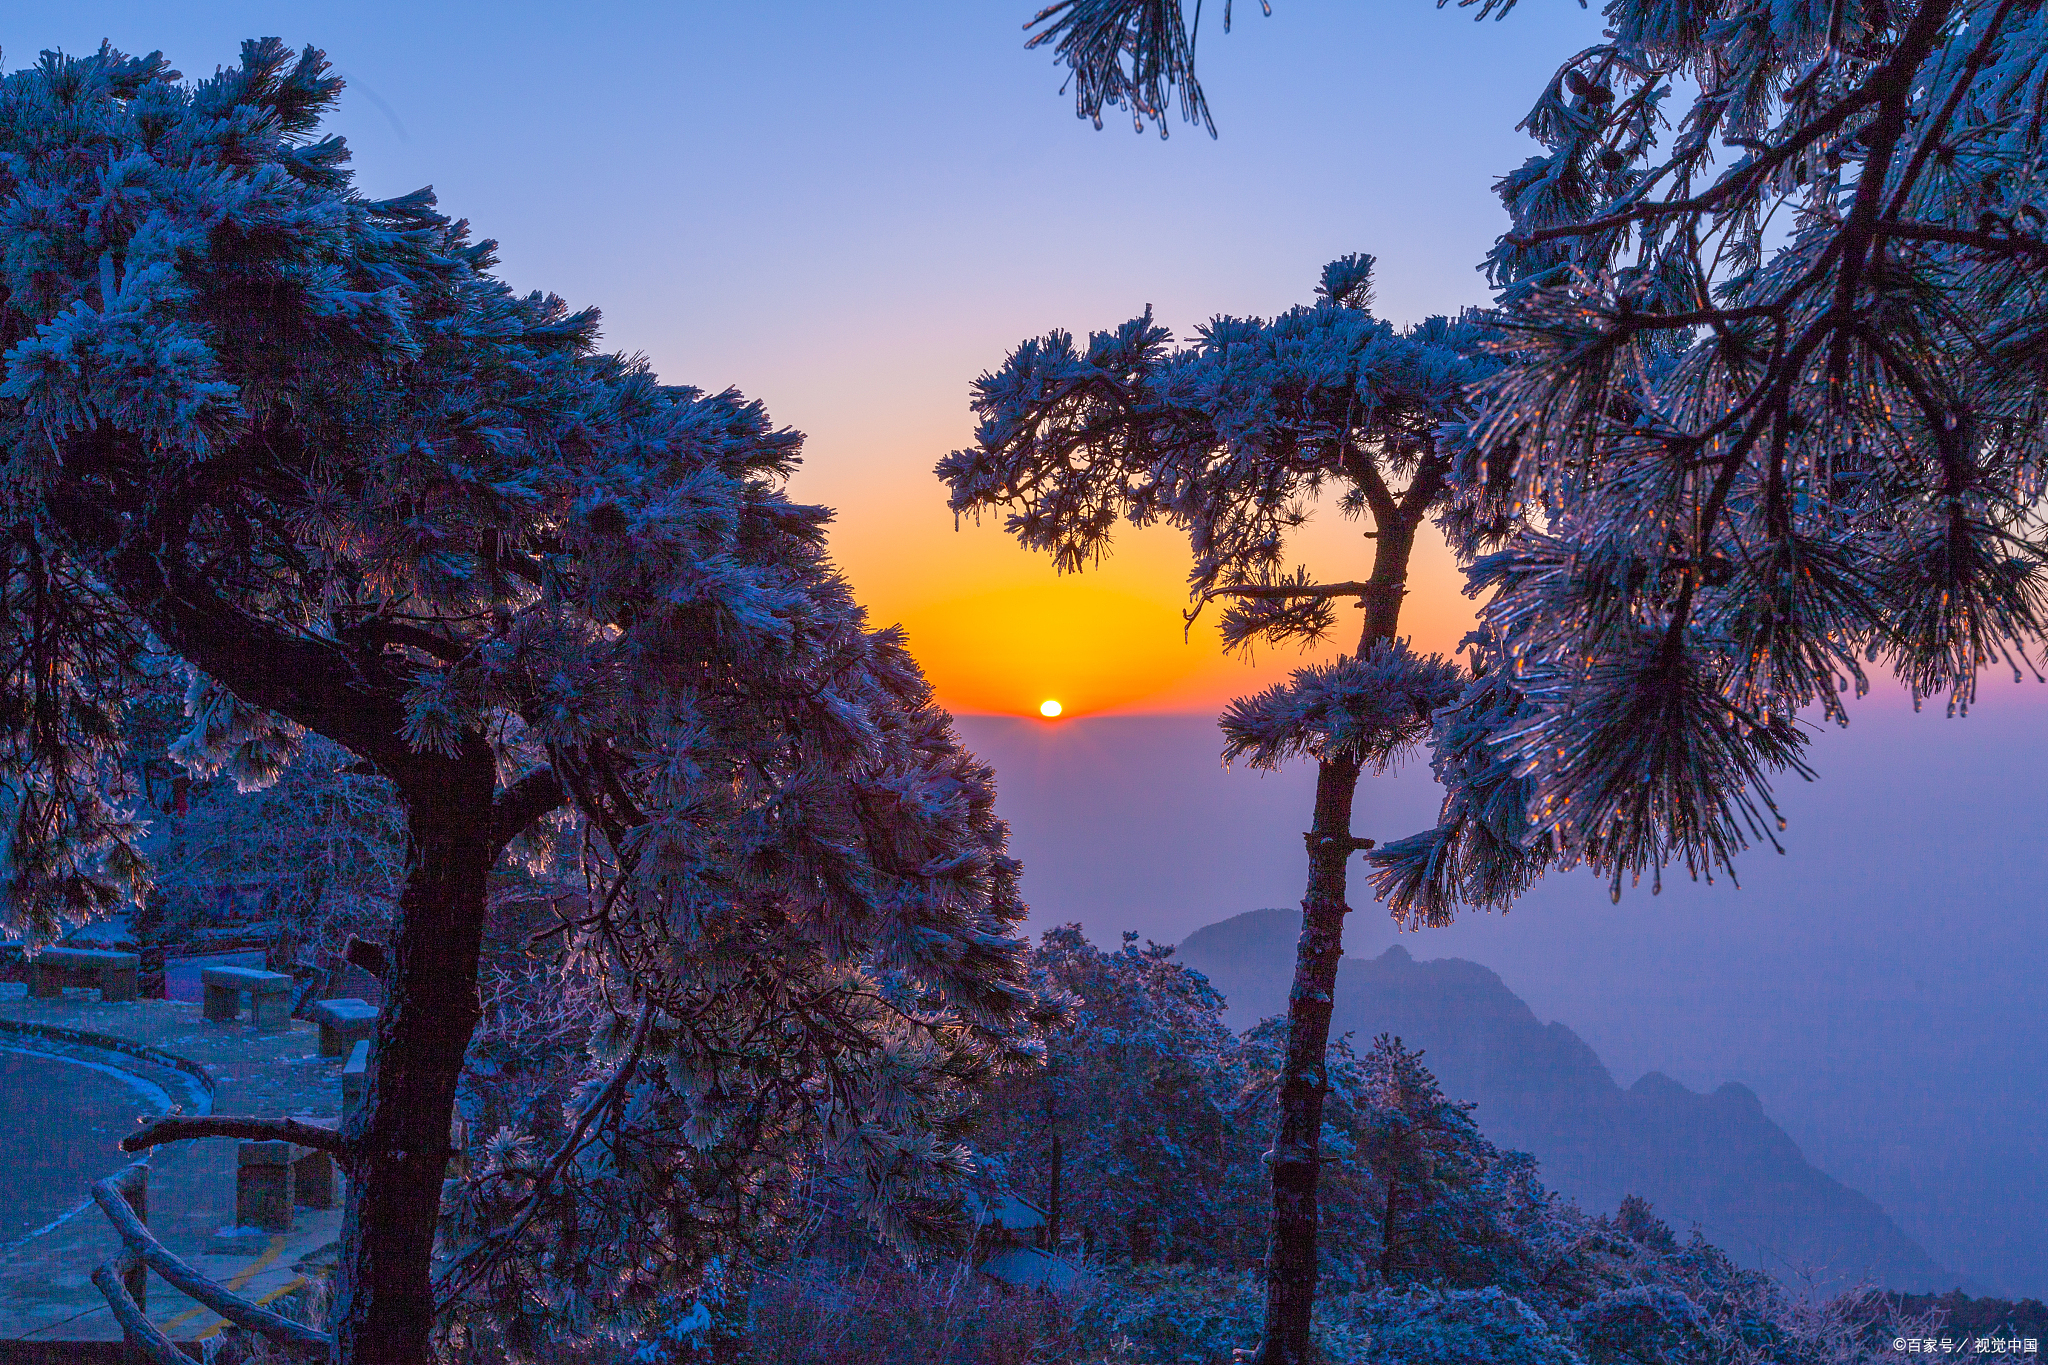 庐山和龙虎山都是江西省著名的旅游胜地,拥有独特的自然风光和丰富的